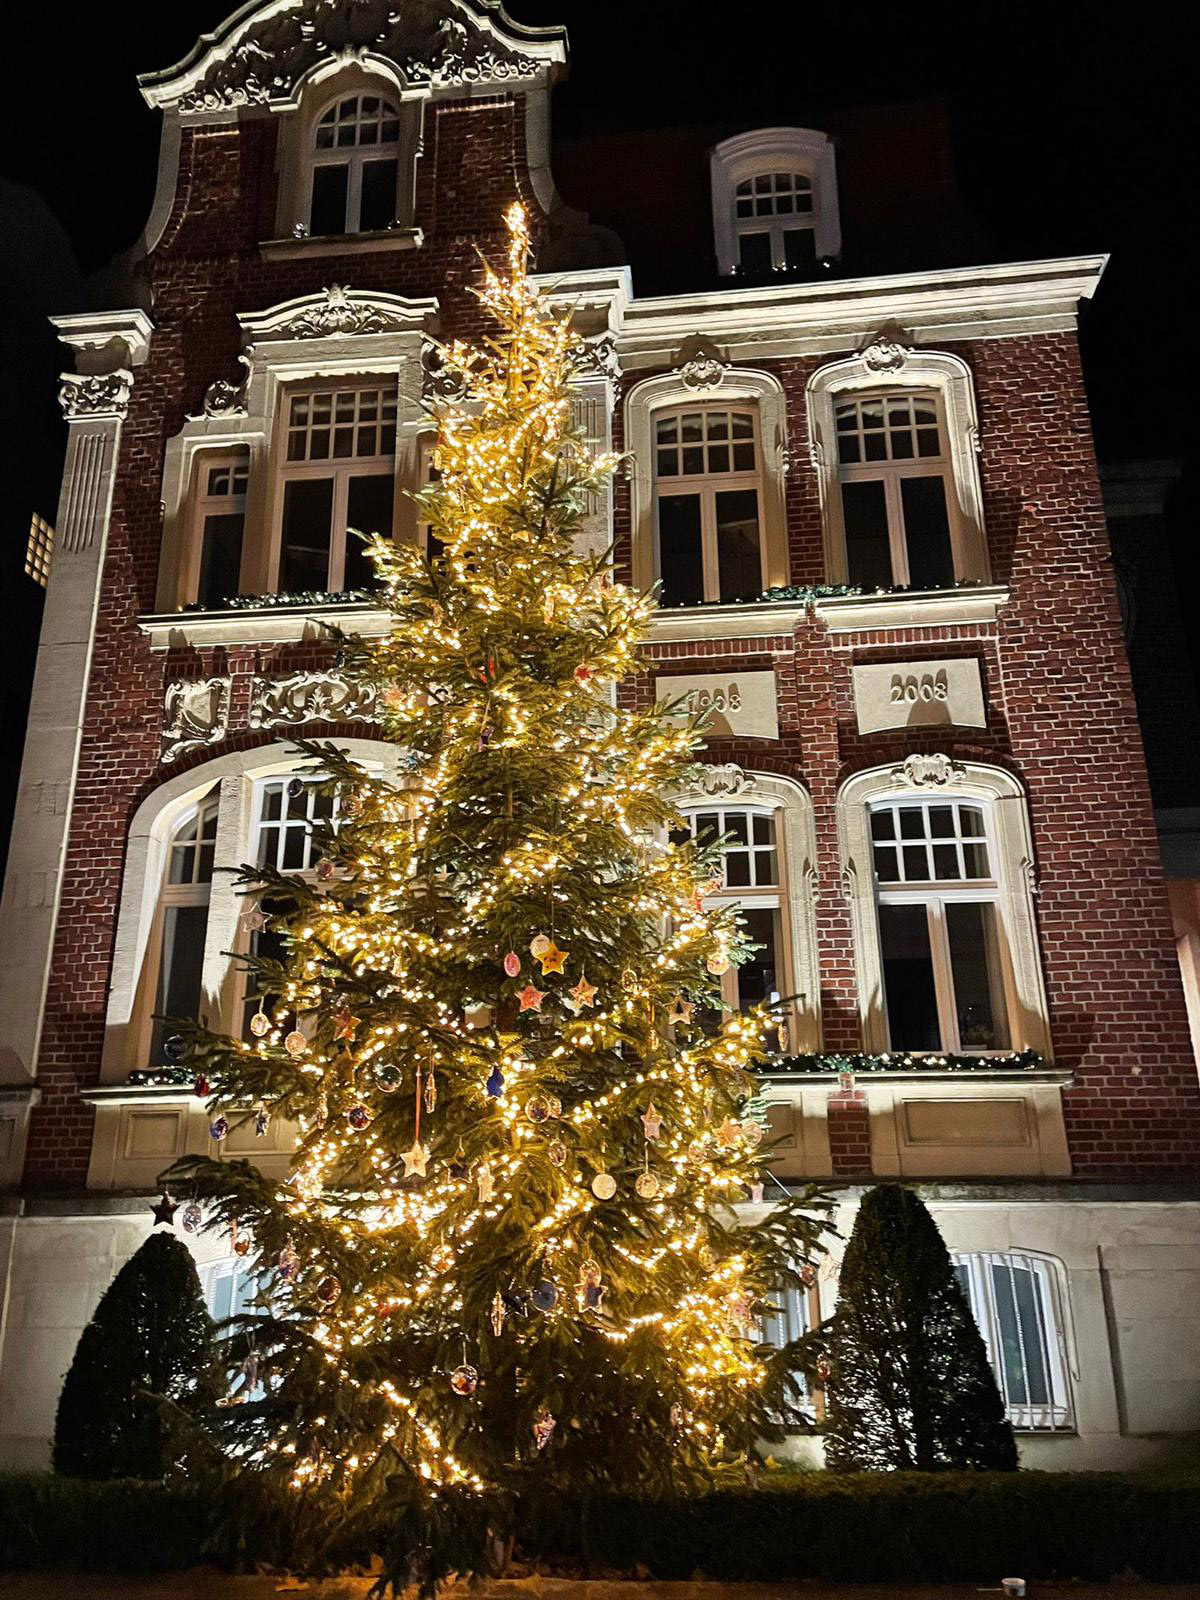 Großer beleuchteter Weihnachtsbaume auf der Marktallee in Hiltrup